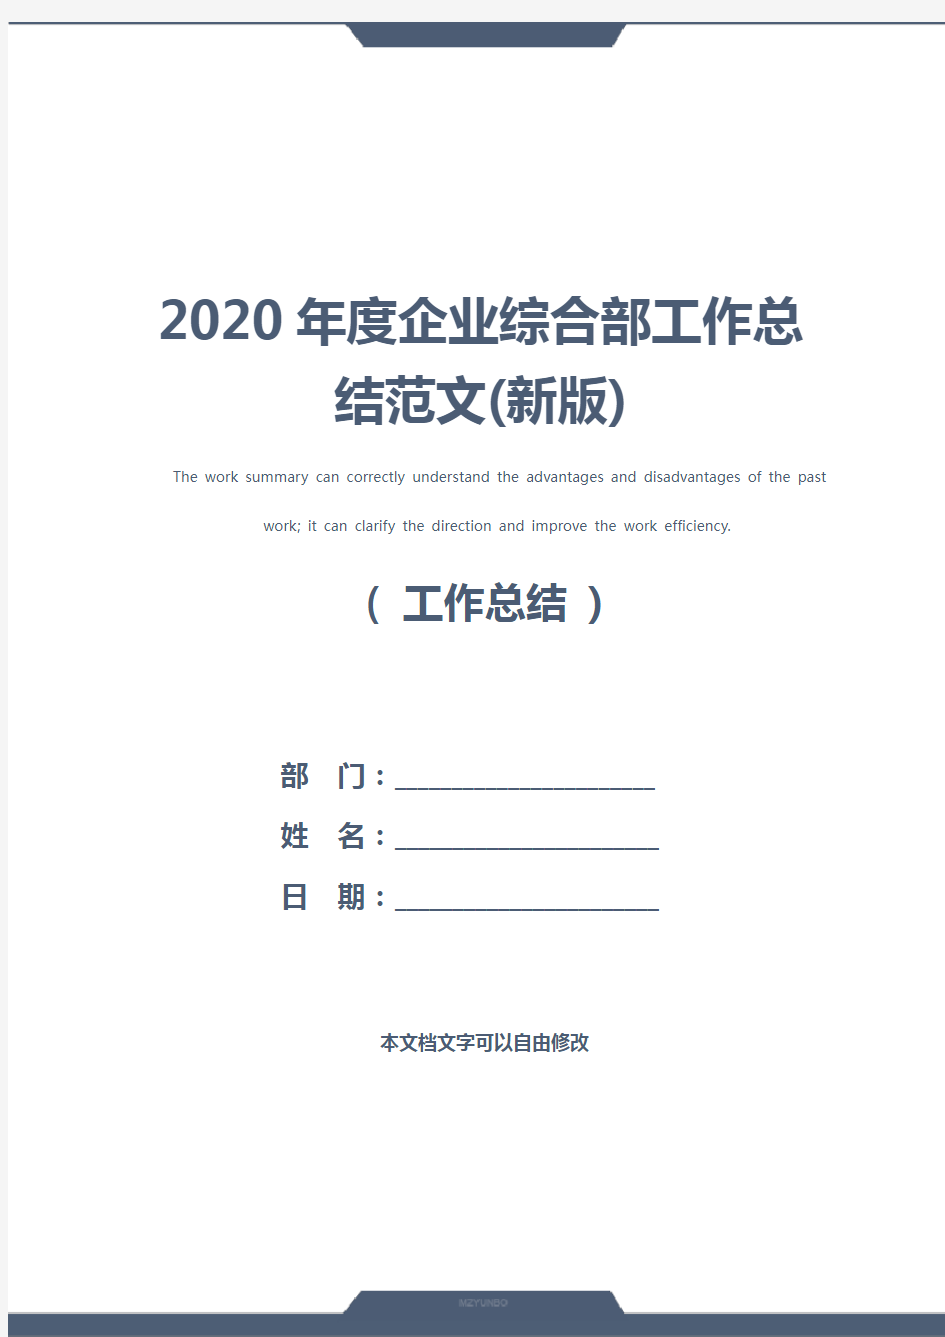 2020年度企业综合部工作总结范文(新版)